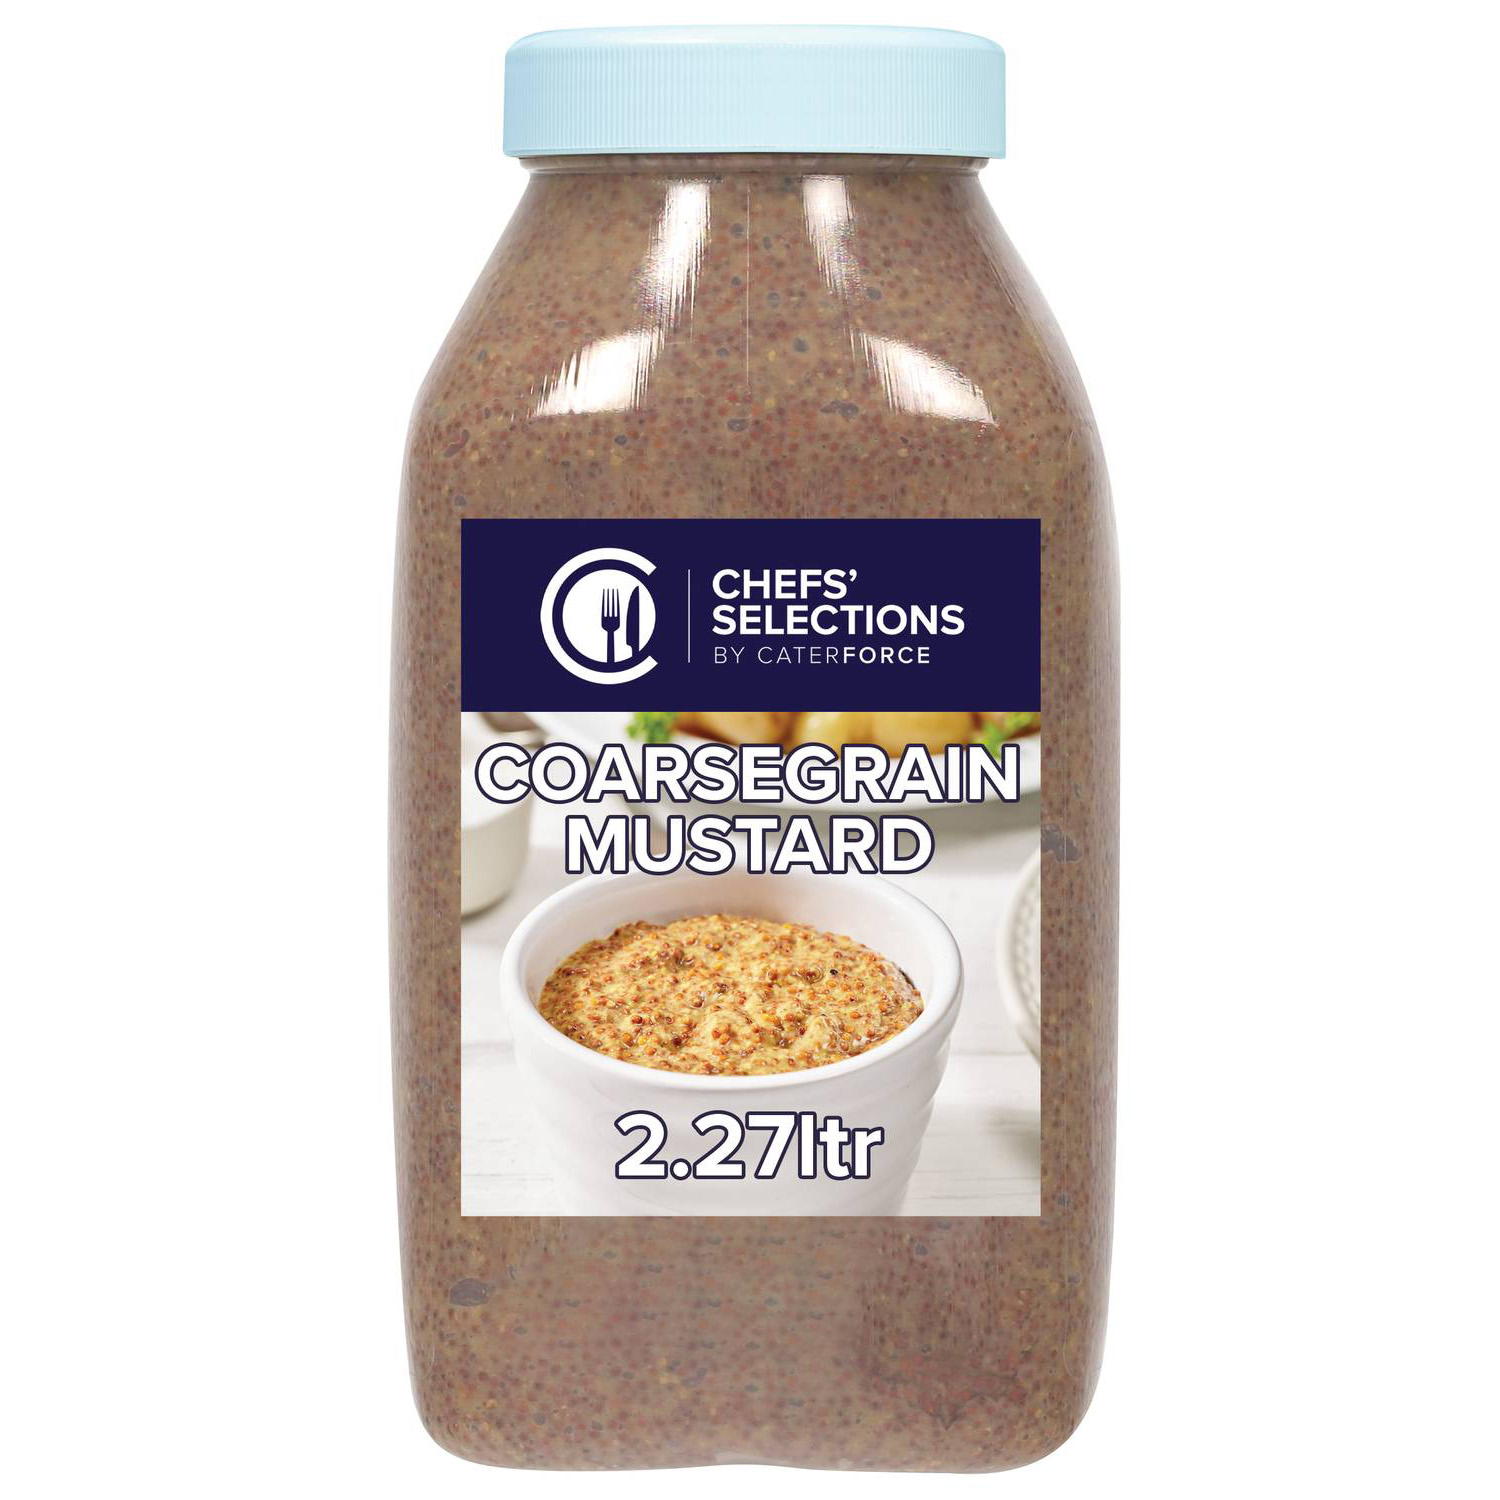 Chefs’ Selections Coarsegrain Mustard (2 x 2.27L)